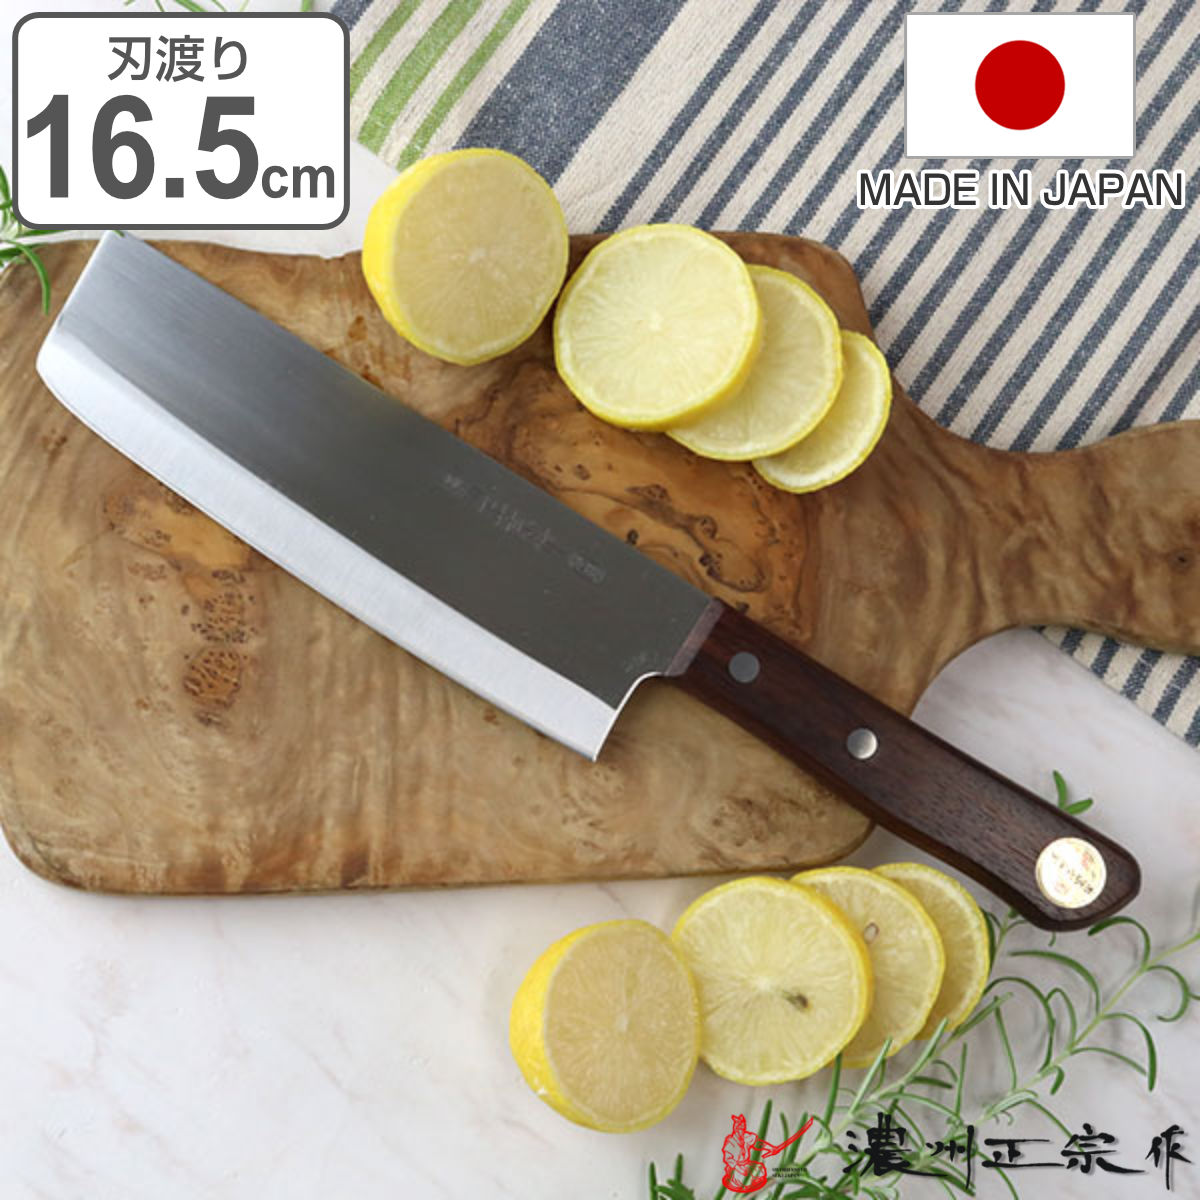 特選 菜切り包丁 16.5cm 濃州正宗 日本製 和包丁 モリブデン鋼 天然